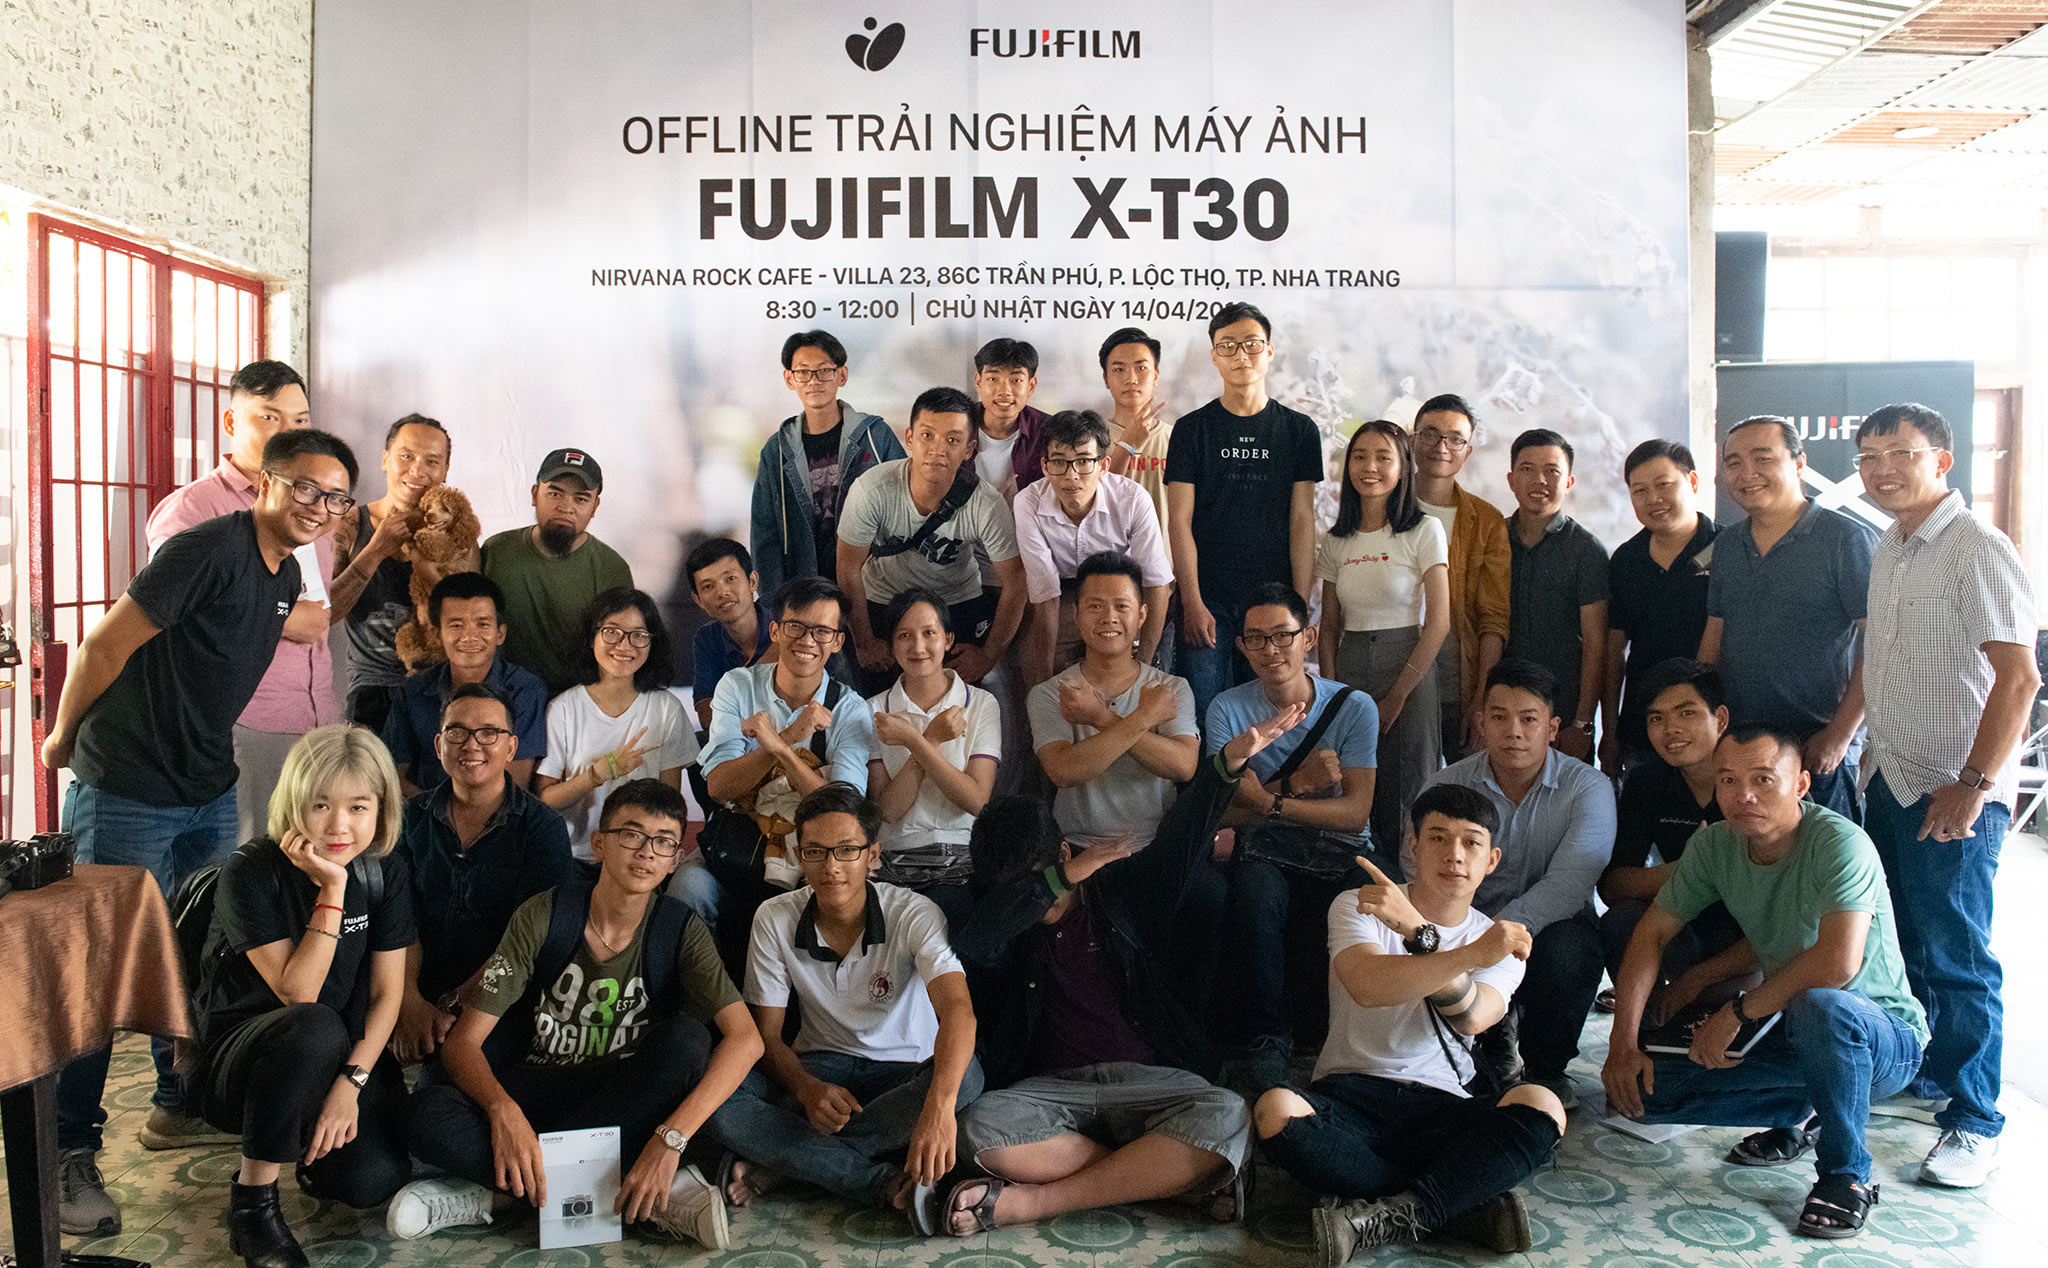 [Report] Offline trải nghiệm Fuji X-T30 tại Nha Trang - Chủ nhật 14/04